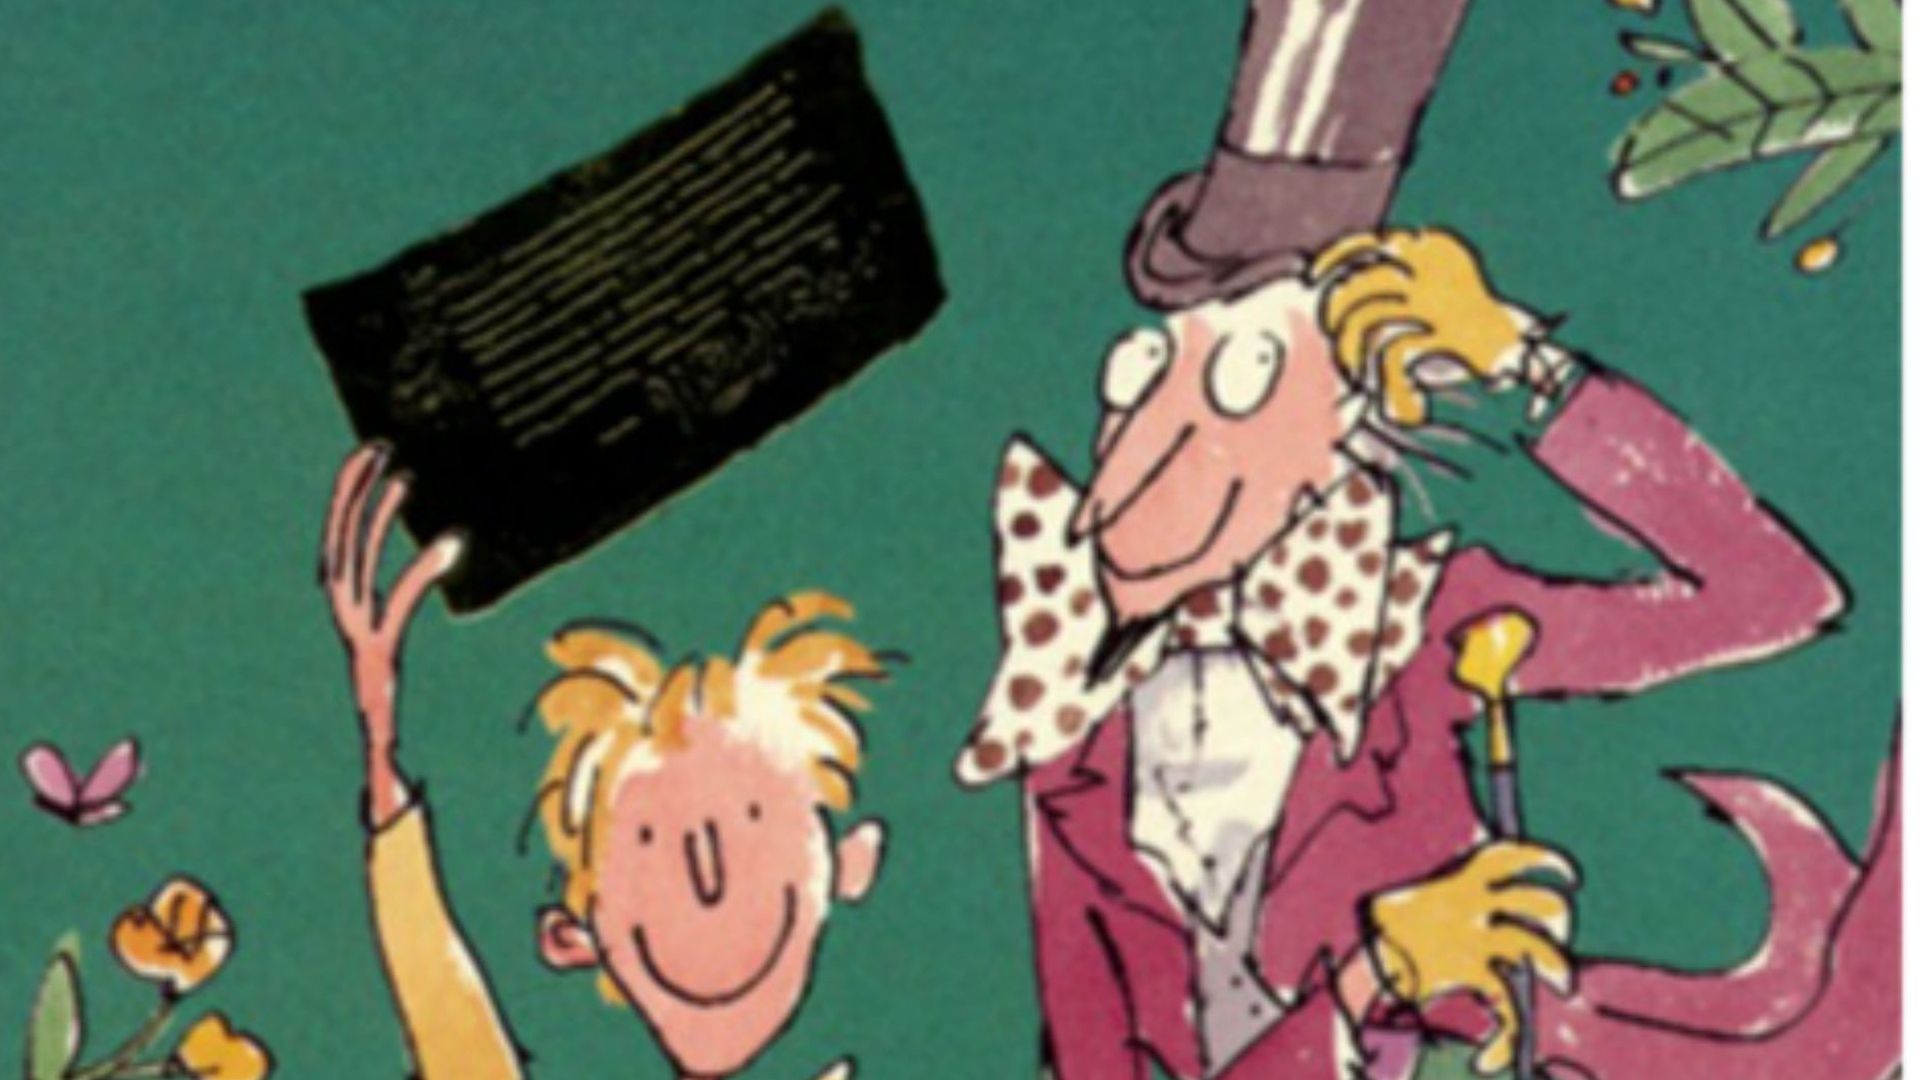 Charlie et la chocolaterie Livre audio, Roald Dahl